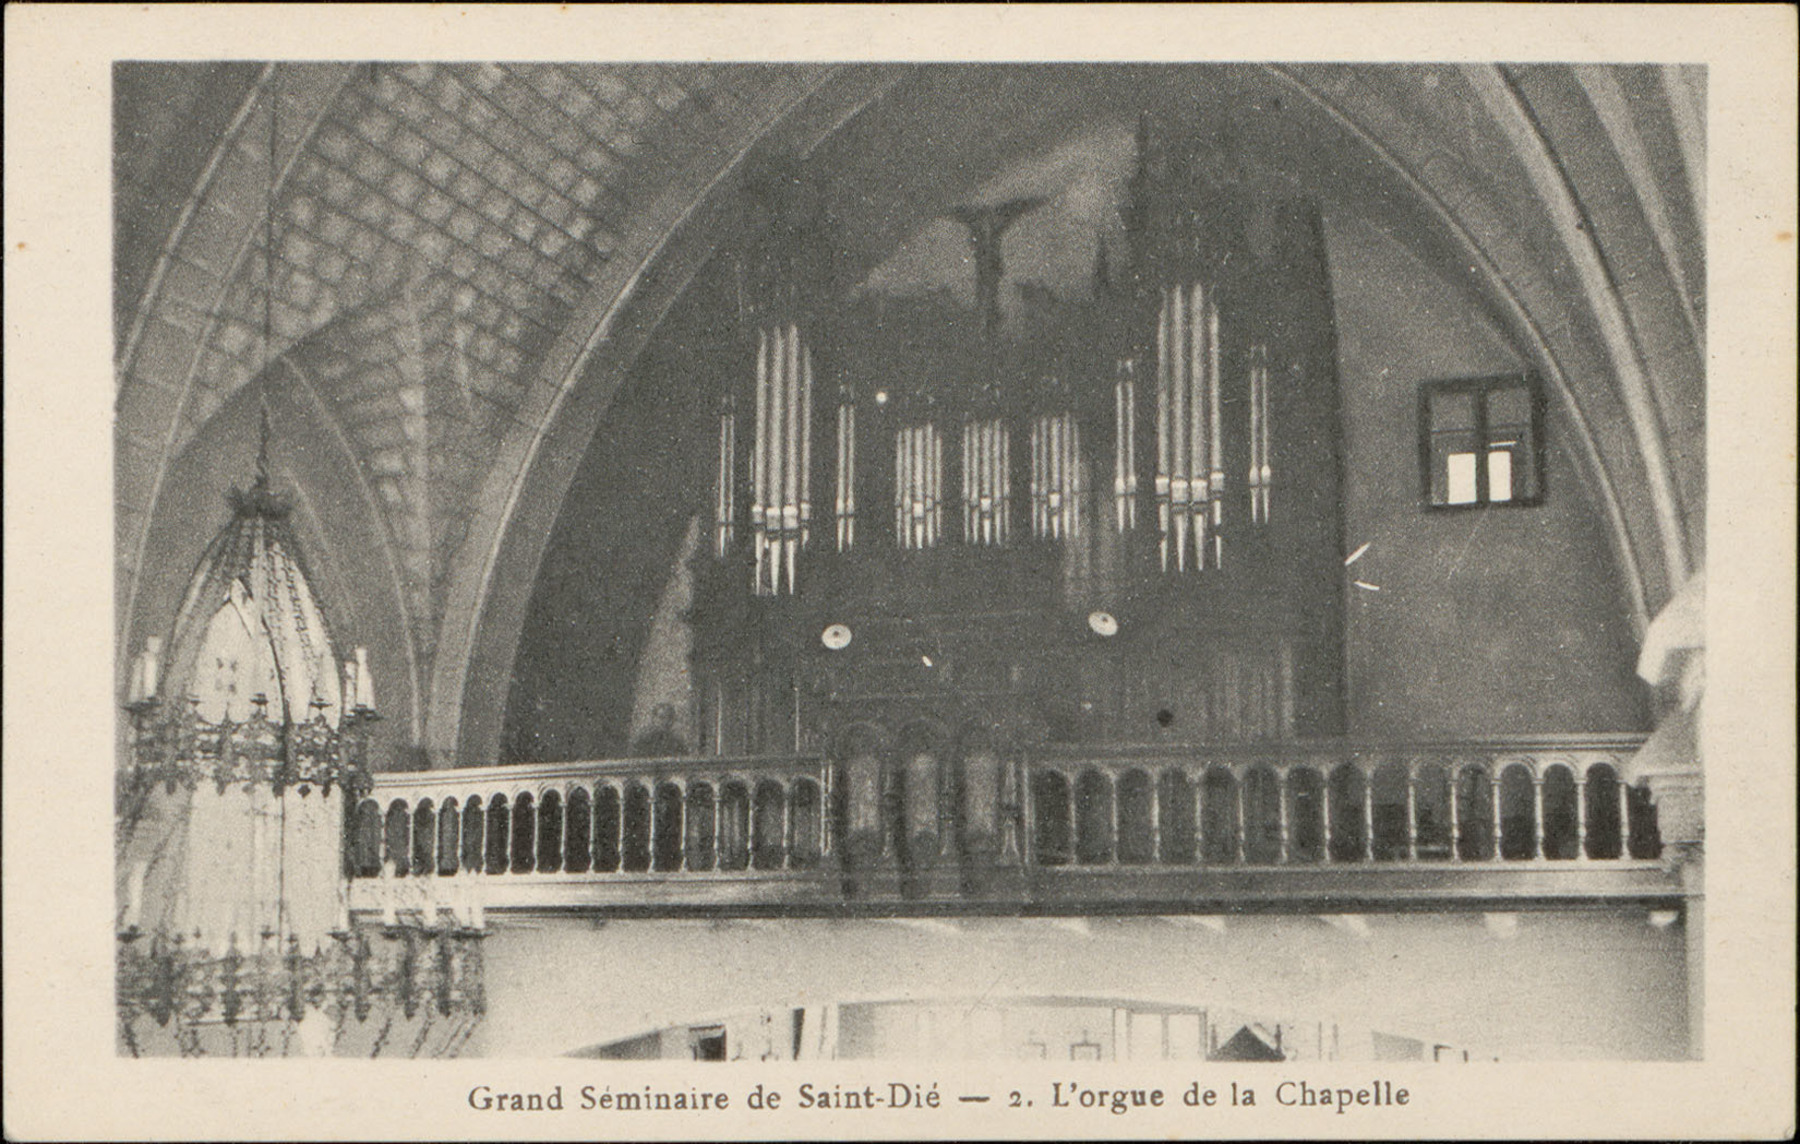 Contenu du Grand séminaire de Saint-Dié : l'orgue de la Chapelle